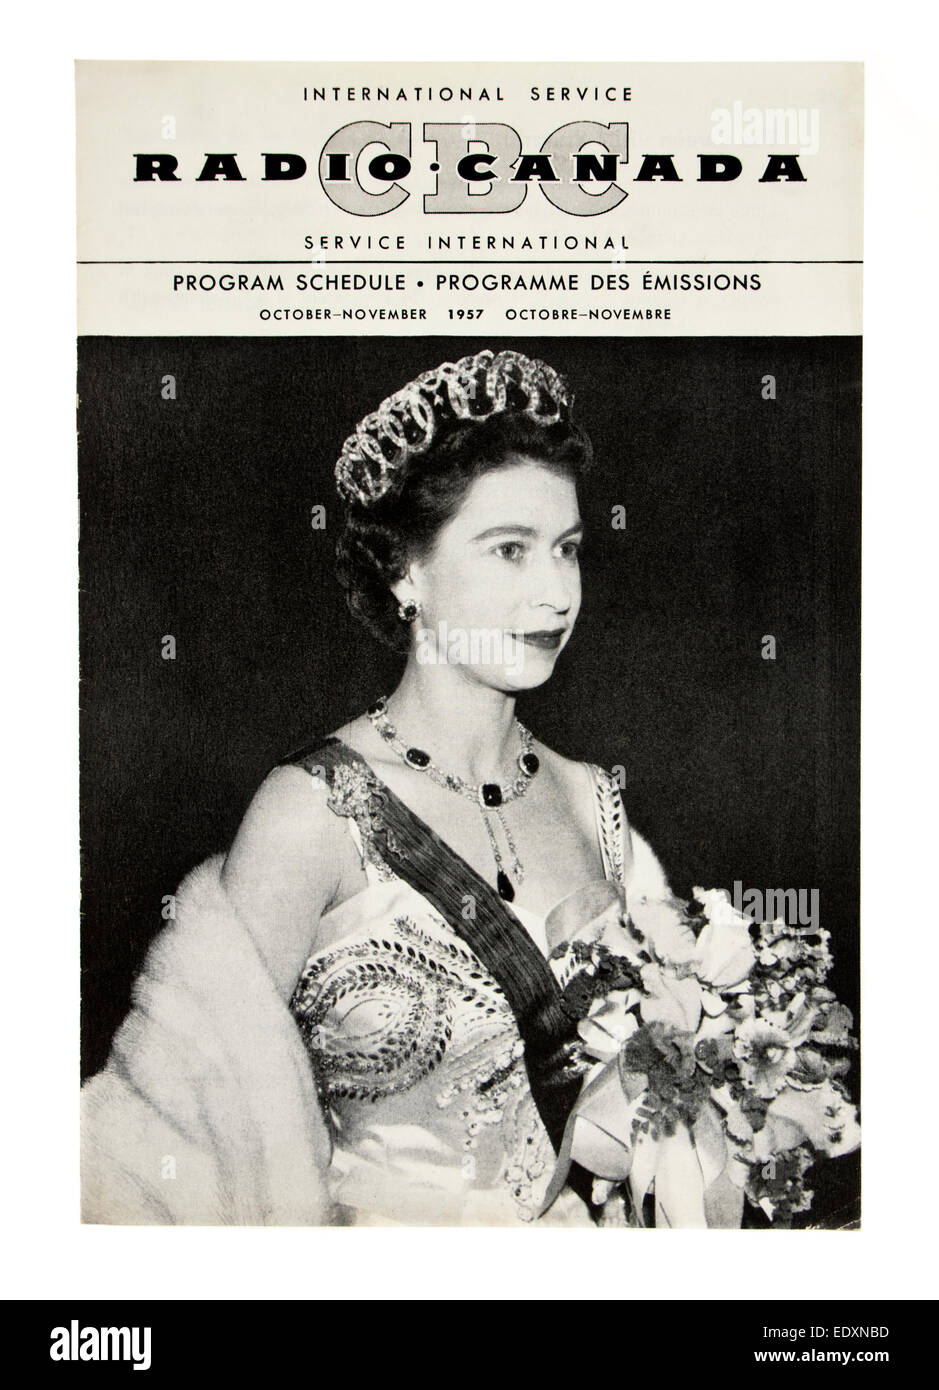 Zeitplan-Programm (Oktober / November 1957) von Radio Canada (International Service) mit Königin Elizabeth II auf der Titelseite. Stockfoto